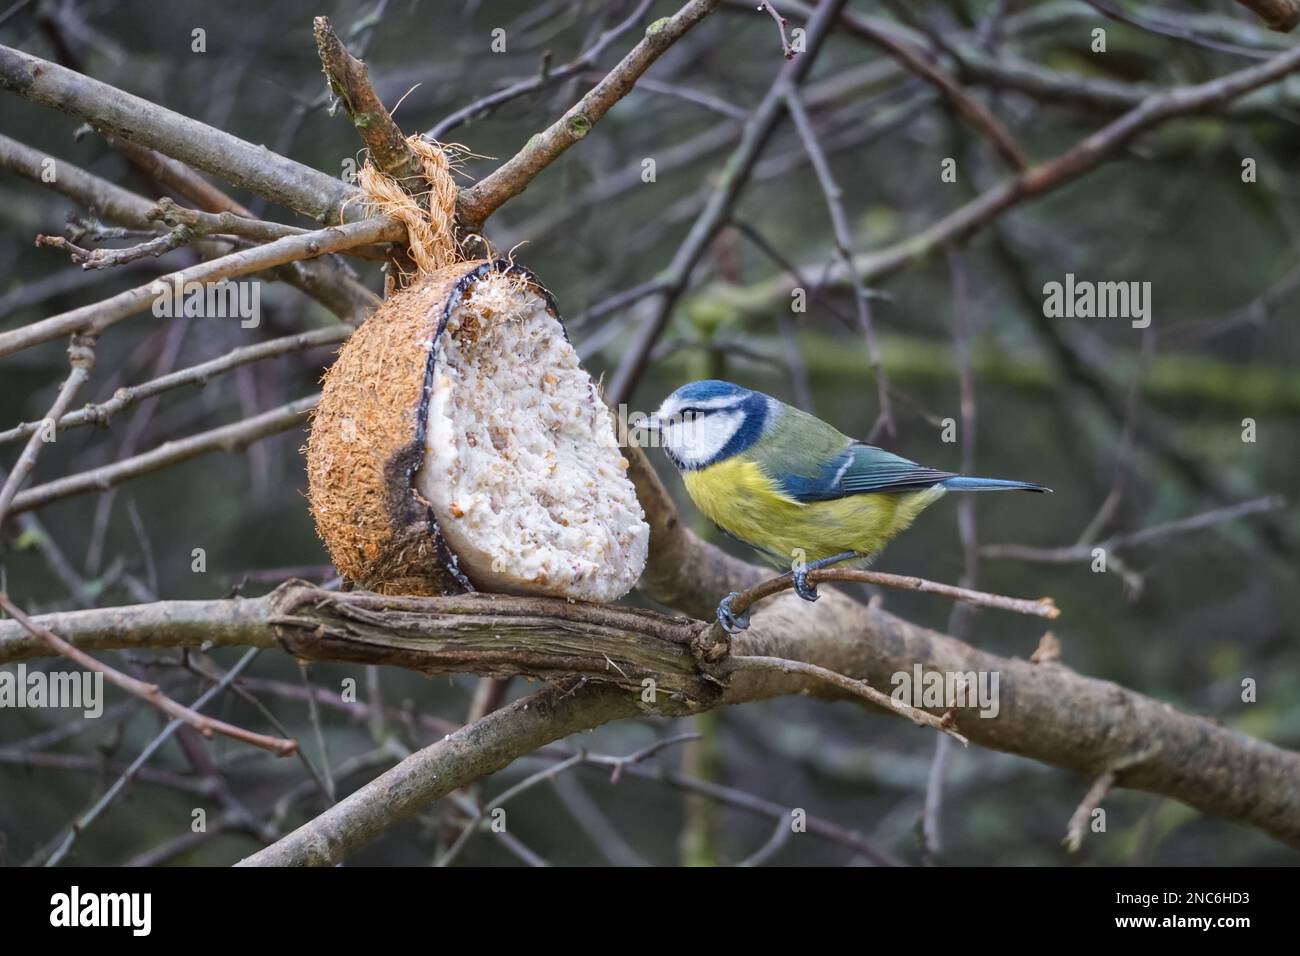 Tit bleu eurasien, Cyanistes caeruleus, se nourrissant de mangeoire à oiseaux de coco Banque D'Images